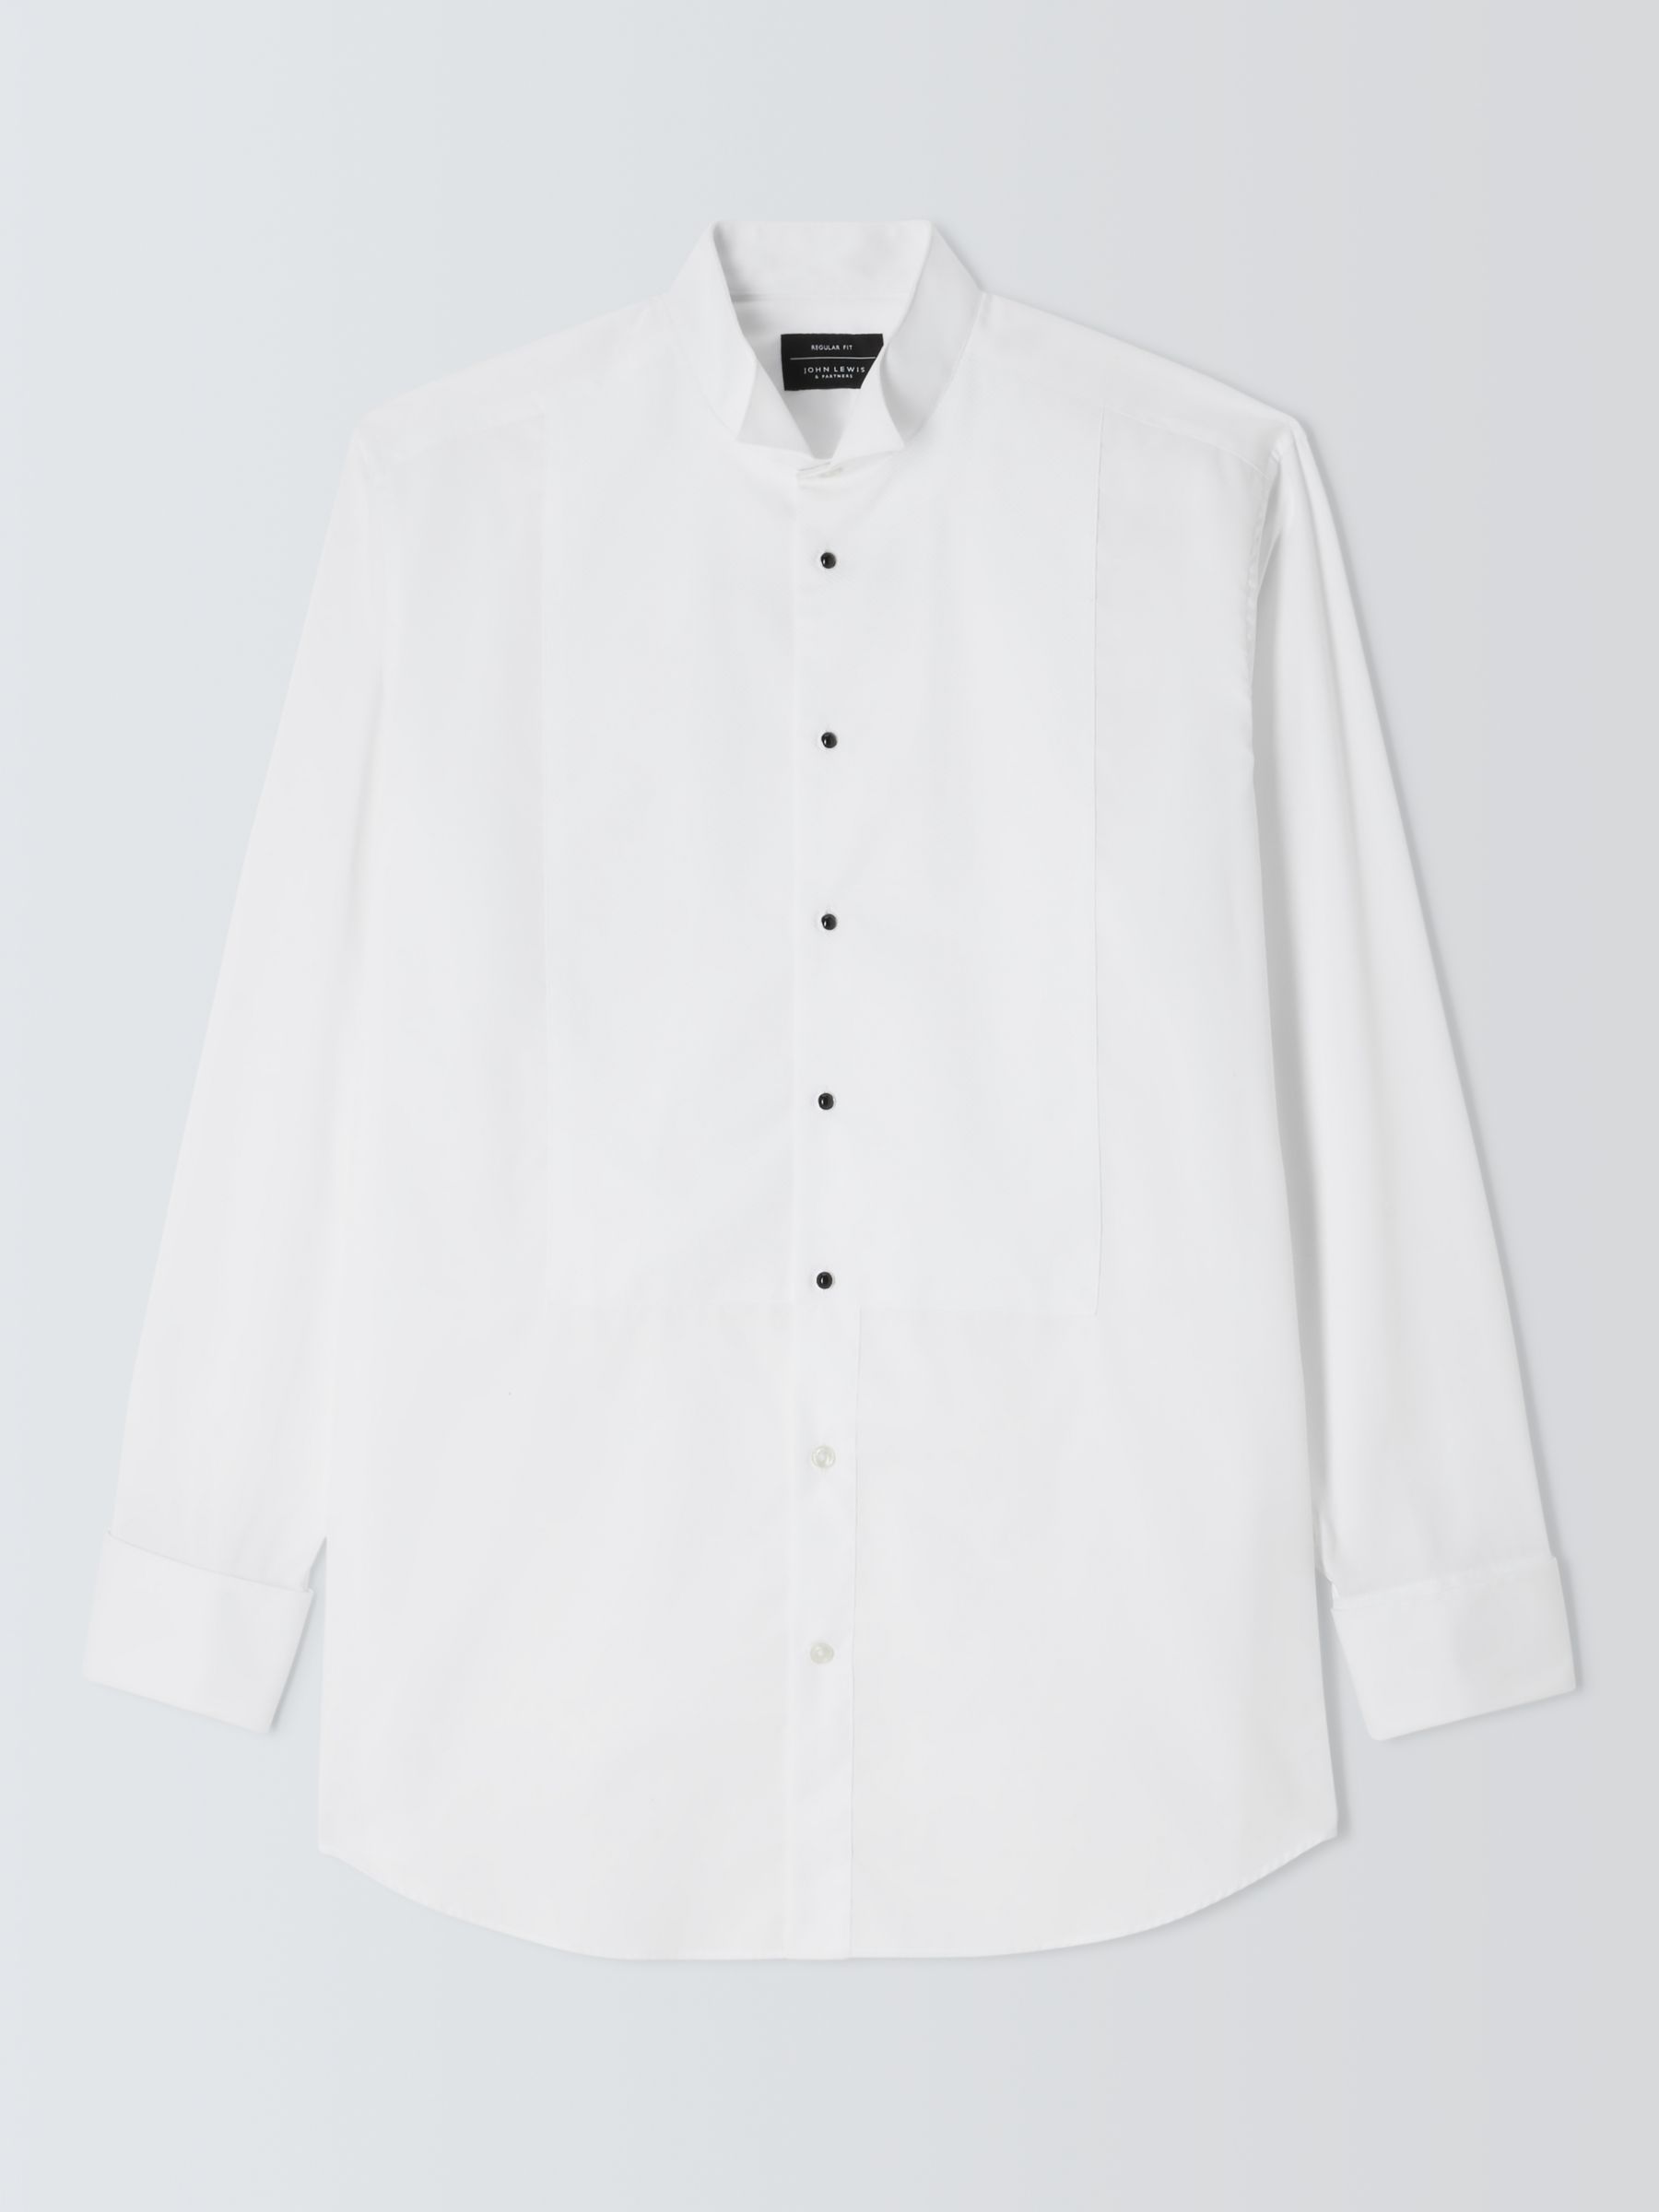 John Lewis Marcella Wing Collar Regular Fit Dress Shirt, White, 15R